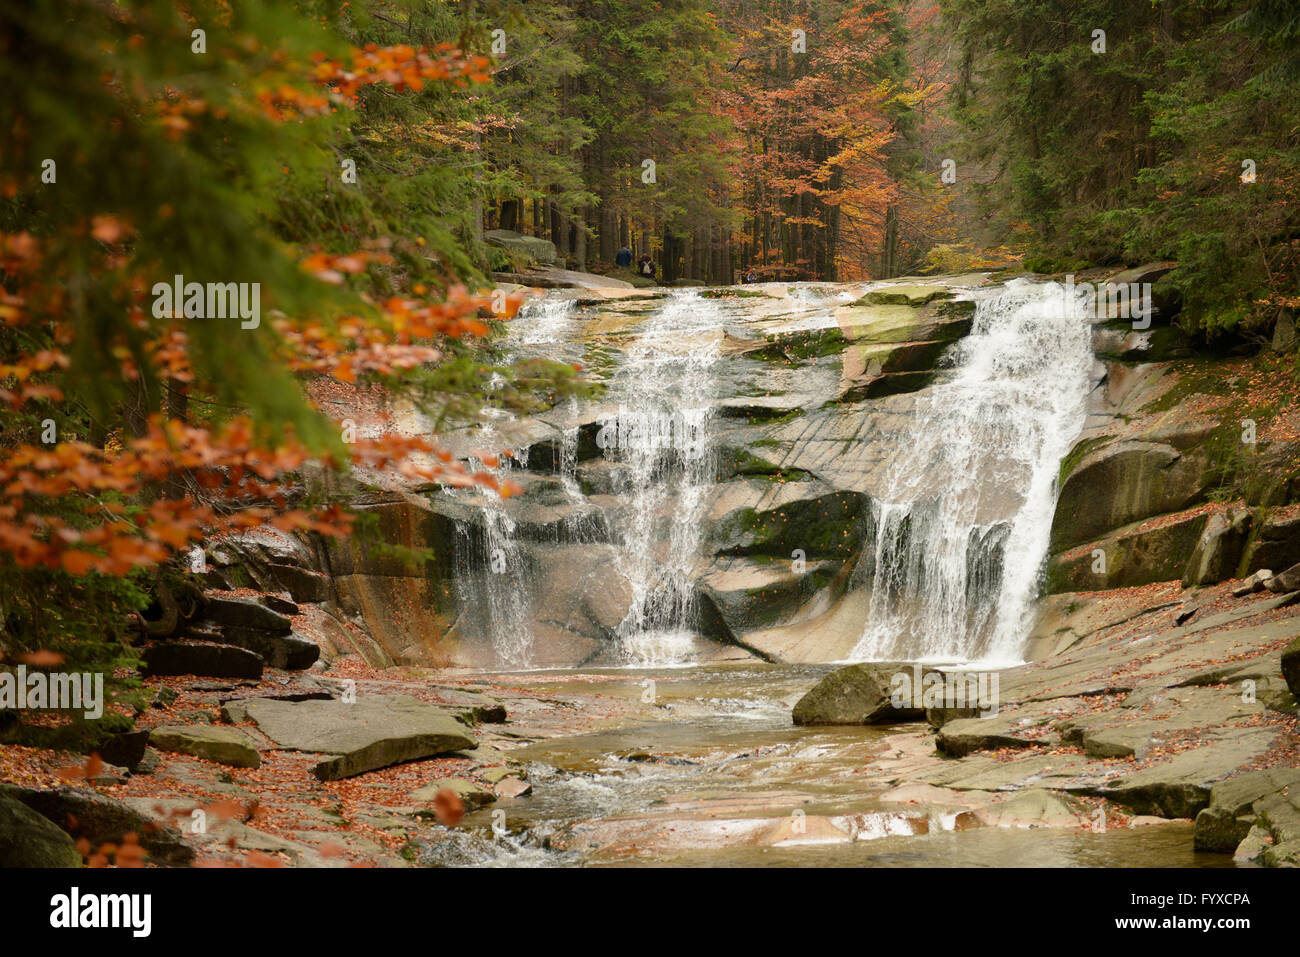 Mumlava Waterfall, Mumlavsky vodopad, Harrachov, Giant Mountains, Czechia / Karkonosze Mountains Stock Photo